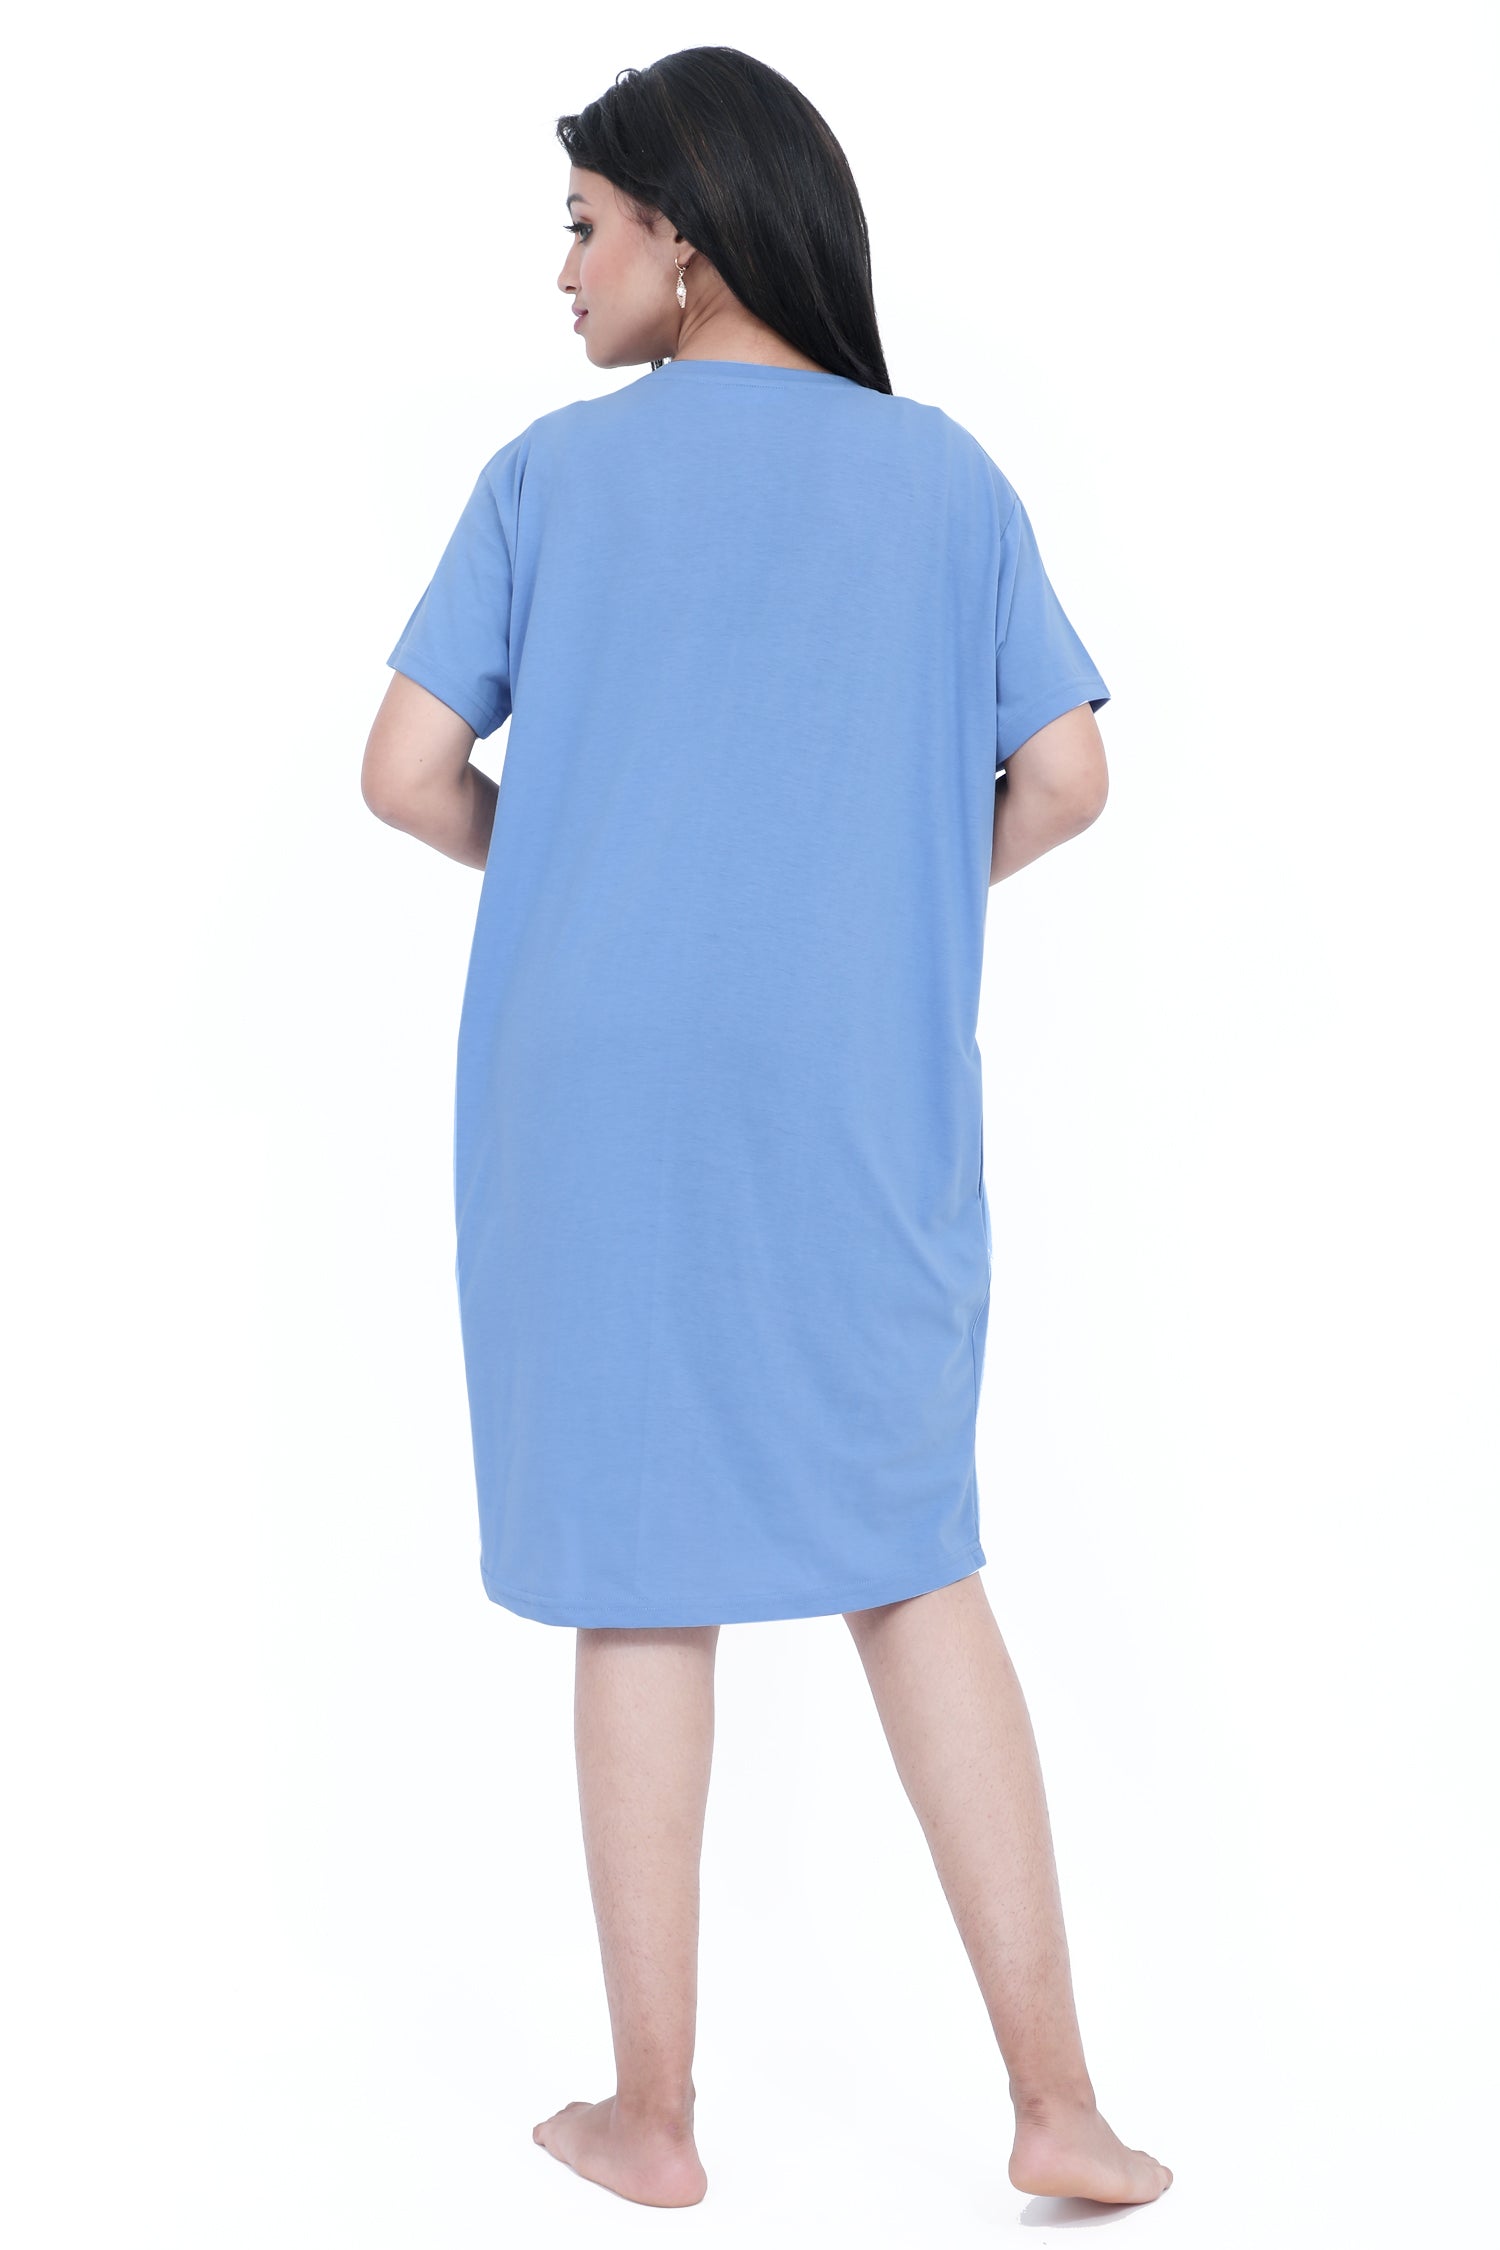 महिलाओं के लिए छोटी नीली नाइटी ड्रेस